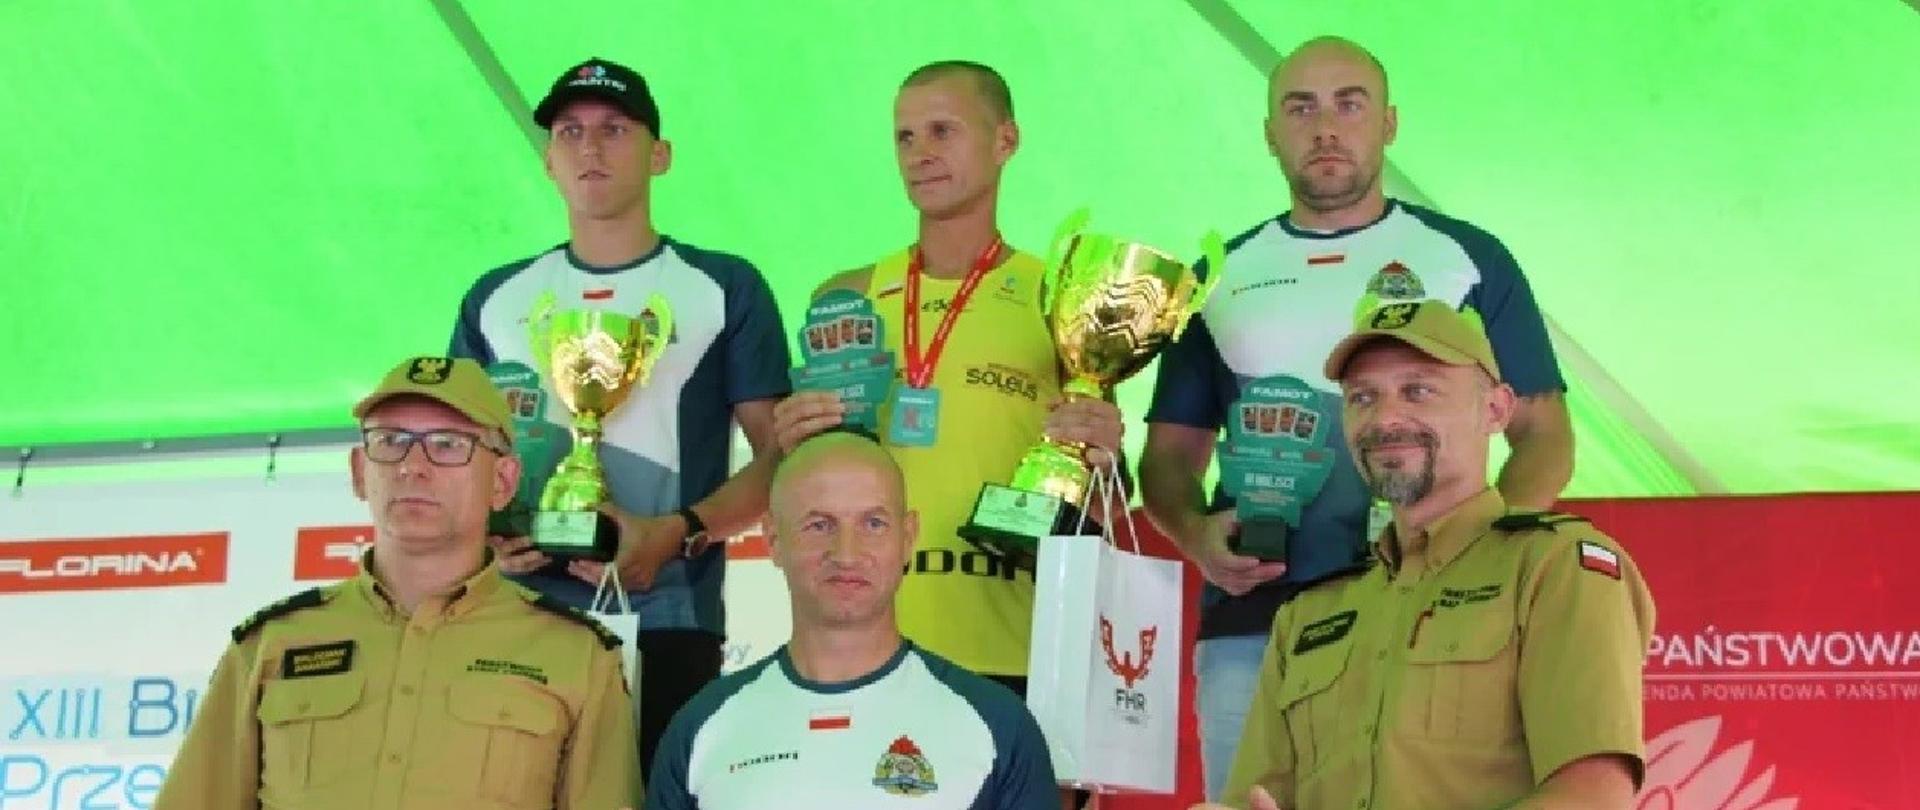 Trzech mężczyzn w strojach sportowych stoi na podium, przed nimi stoi trzech mężczyzn, dwóch stojących po bokach ubranych jest w mundury straży pożarnej, stojący w środku jest w stroju sportowym